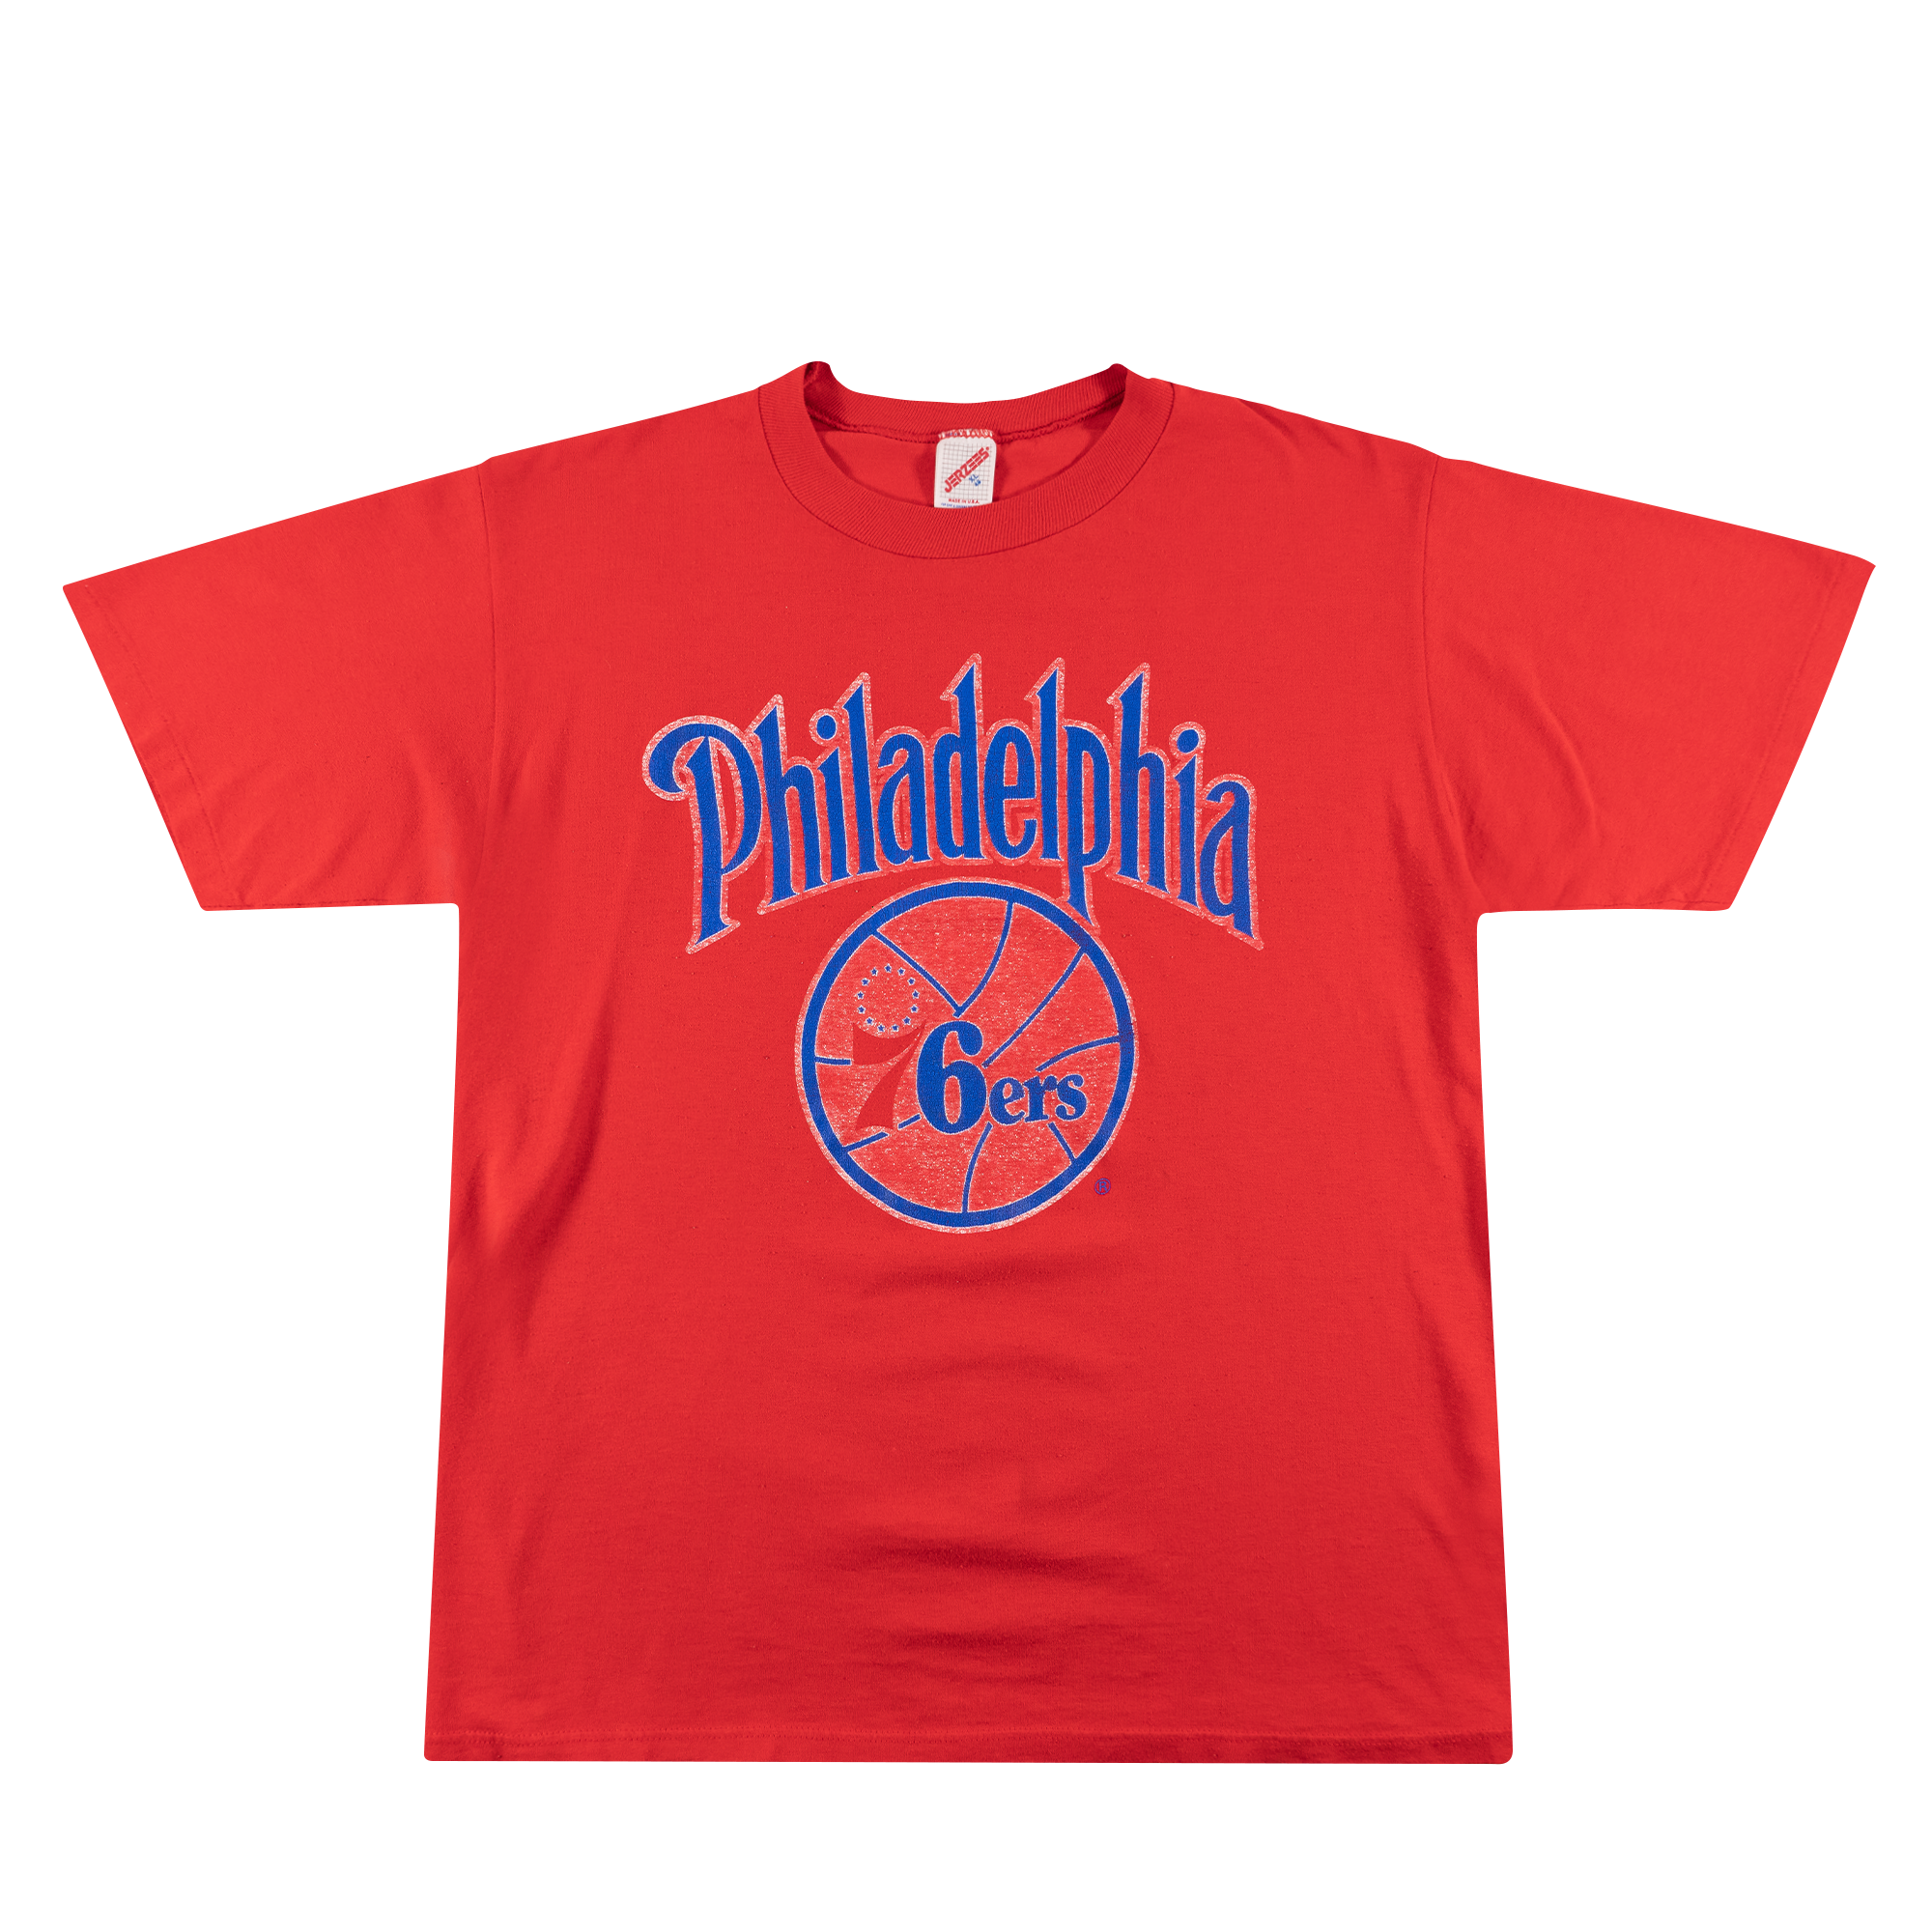 Philadelphia 76ers Tee Red-PLUS